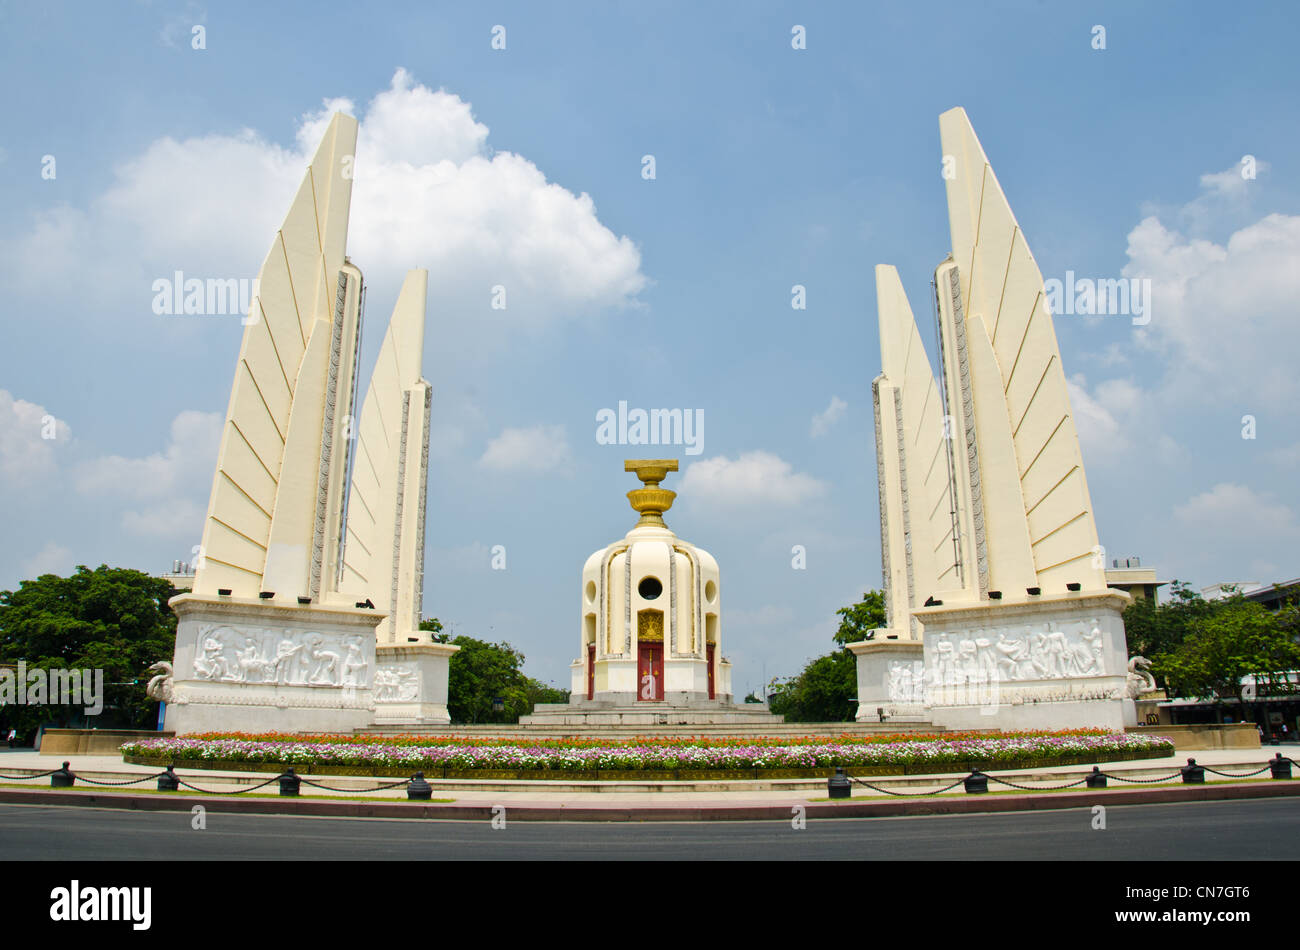 La democrazia è un monumento Anusawari Prachathipatai è un monumento pubblico nel centro di Bangkok, Thailandia Foto Stock